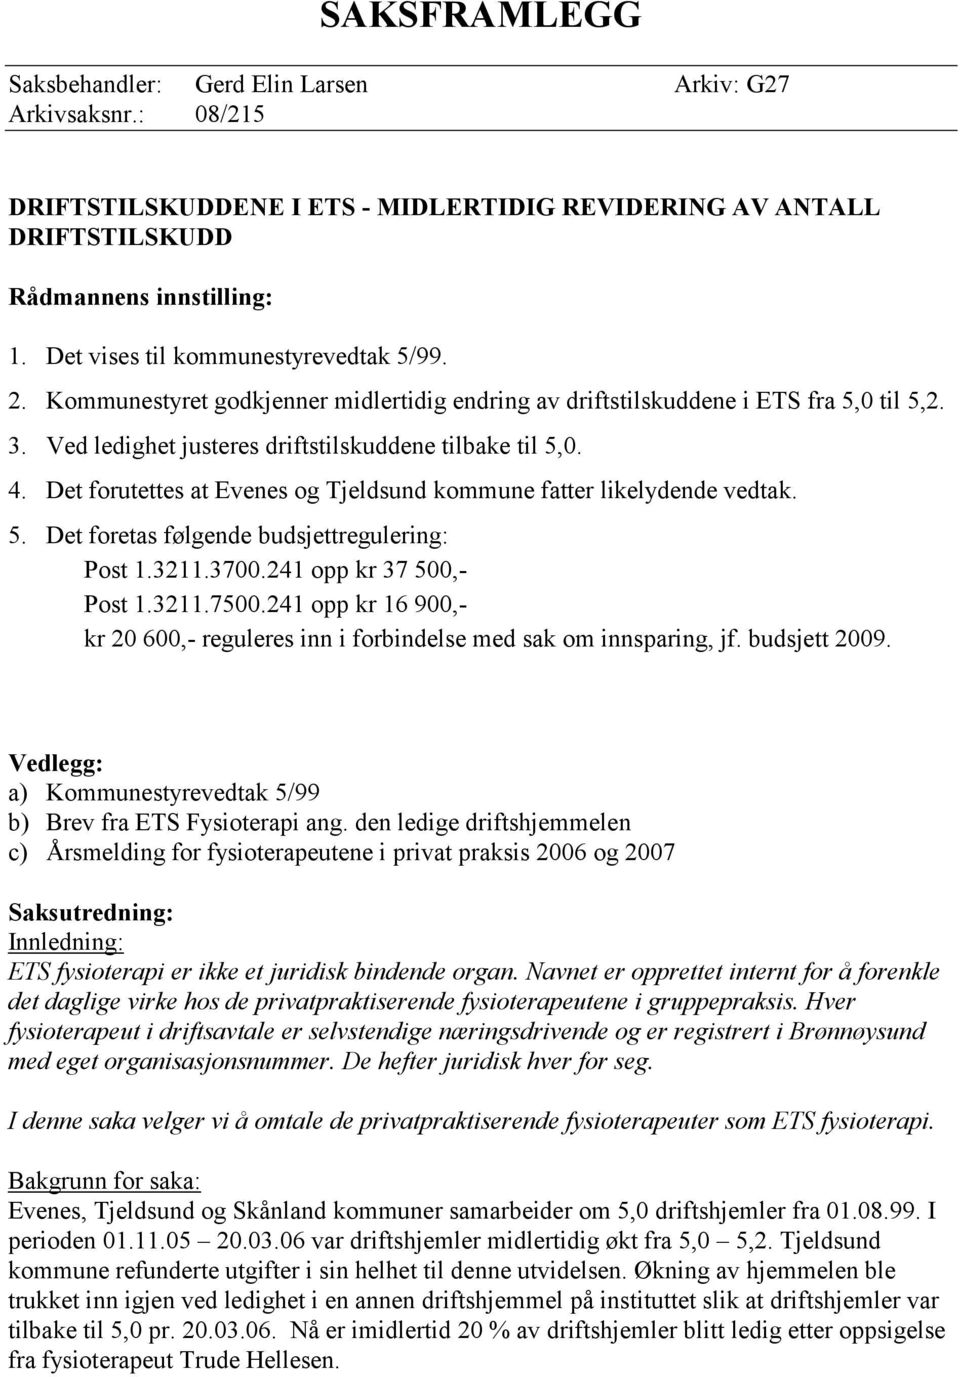 Det forutettes at Evenes og Tjeldsund kommune fatter likelydende vedtak. 5. Det foretas følgende budsjettregulering: Post 1.3211.3700.241 opp kr 37 500,- Post 1.3211.7500.